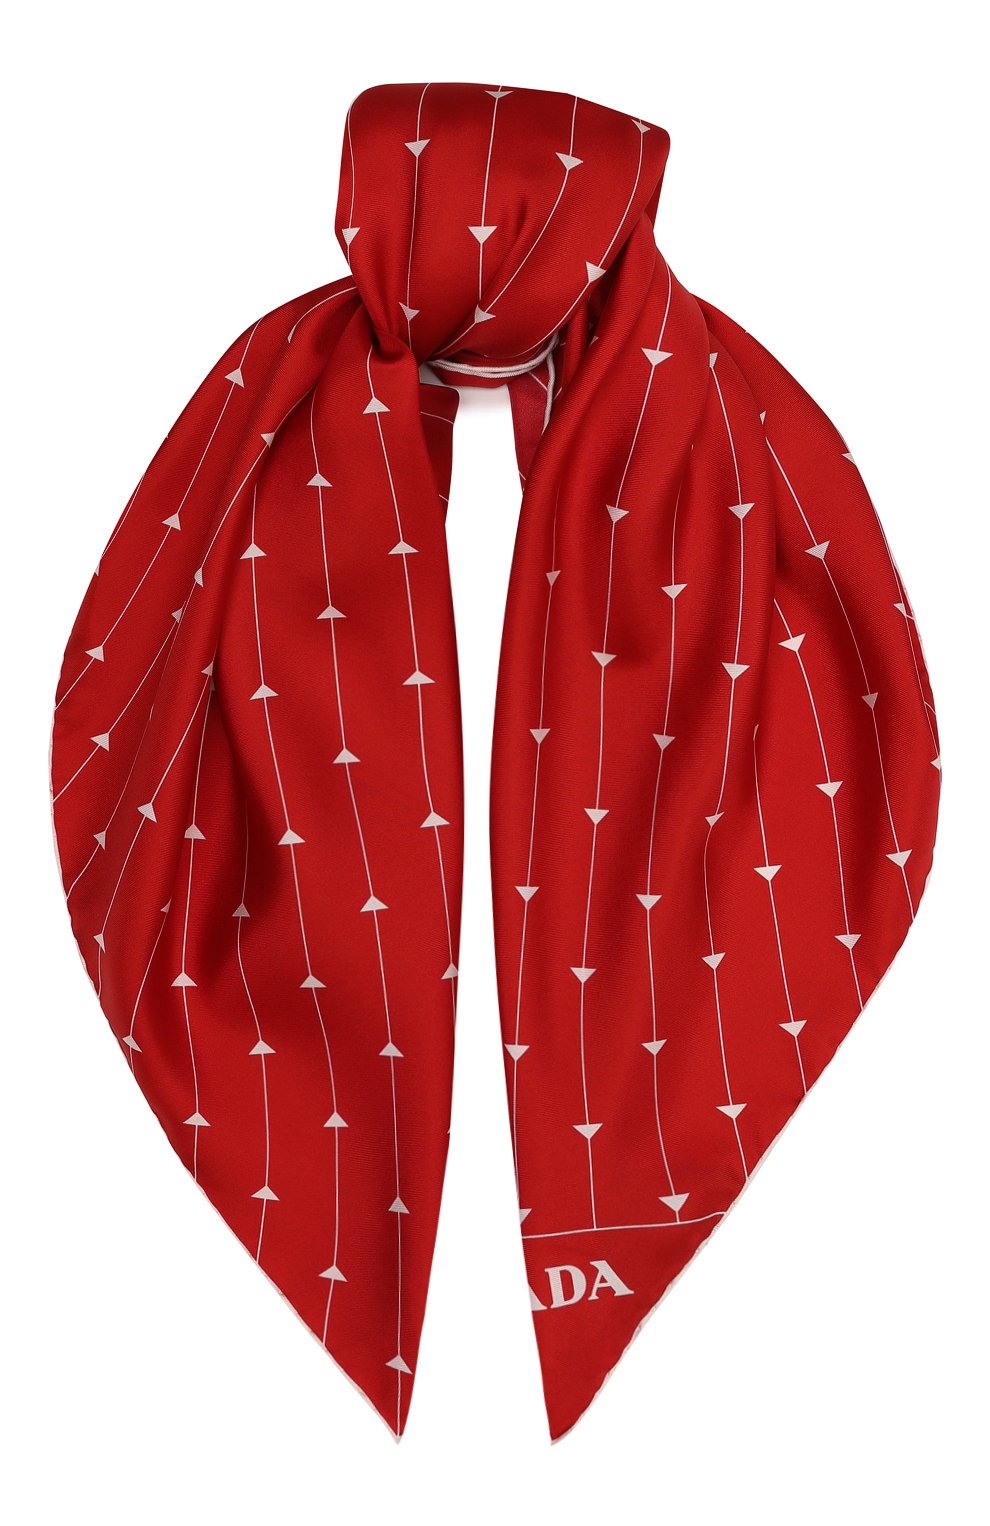 Этта гут алый платок. Платок Prada. Красный шелковый шарф. Алый шарф. Шелковый платок красного цвета.